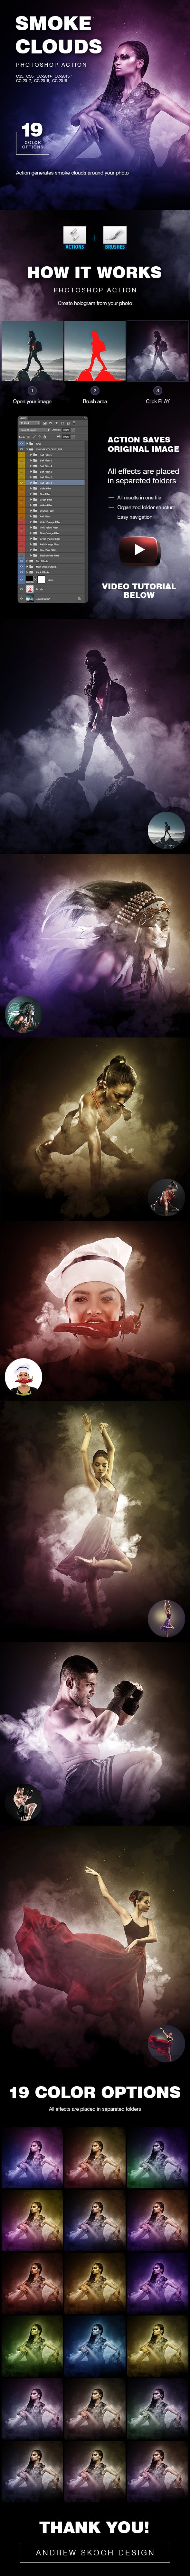 幻彩烟雾缭绕电影史诗效果ps动作下载 Smoke Clouds Photoshop Action插图